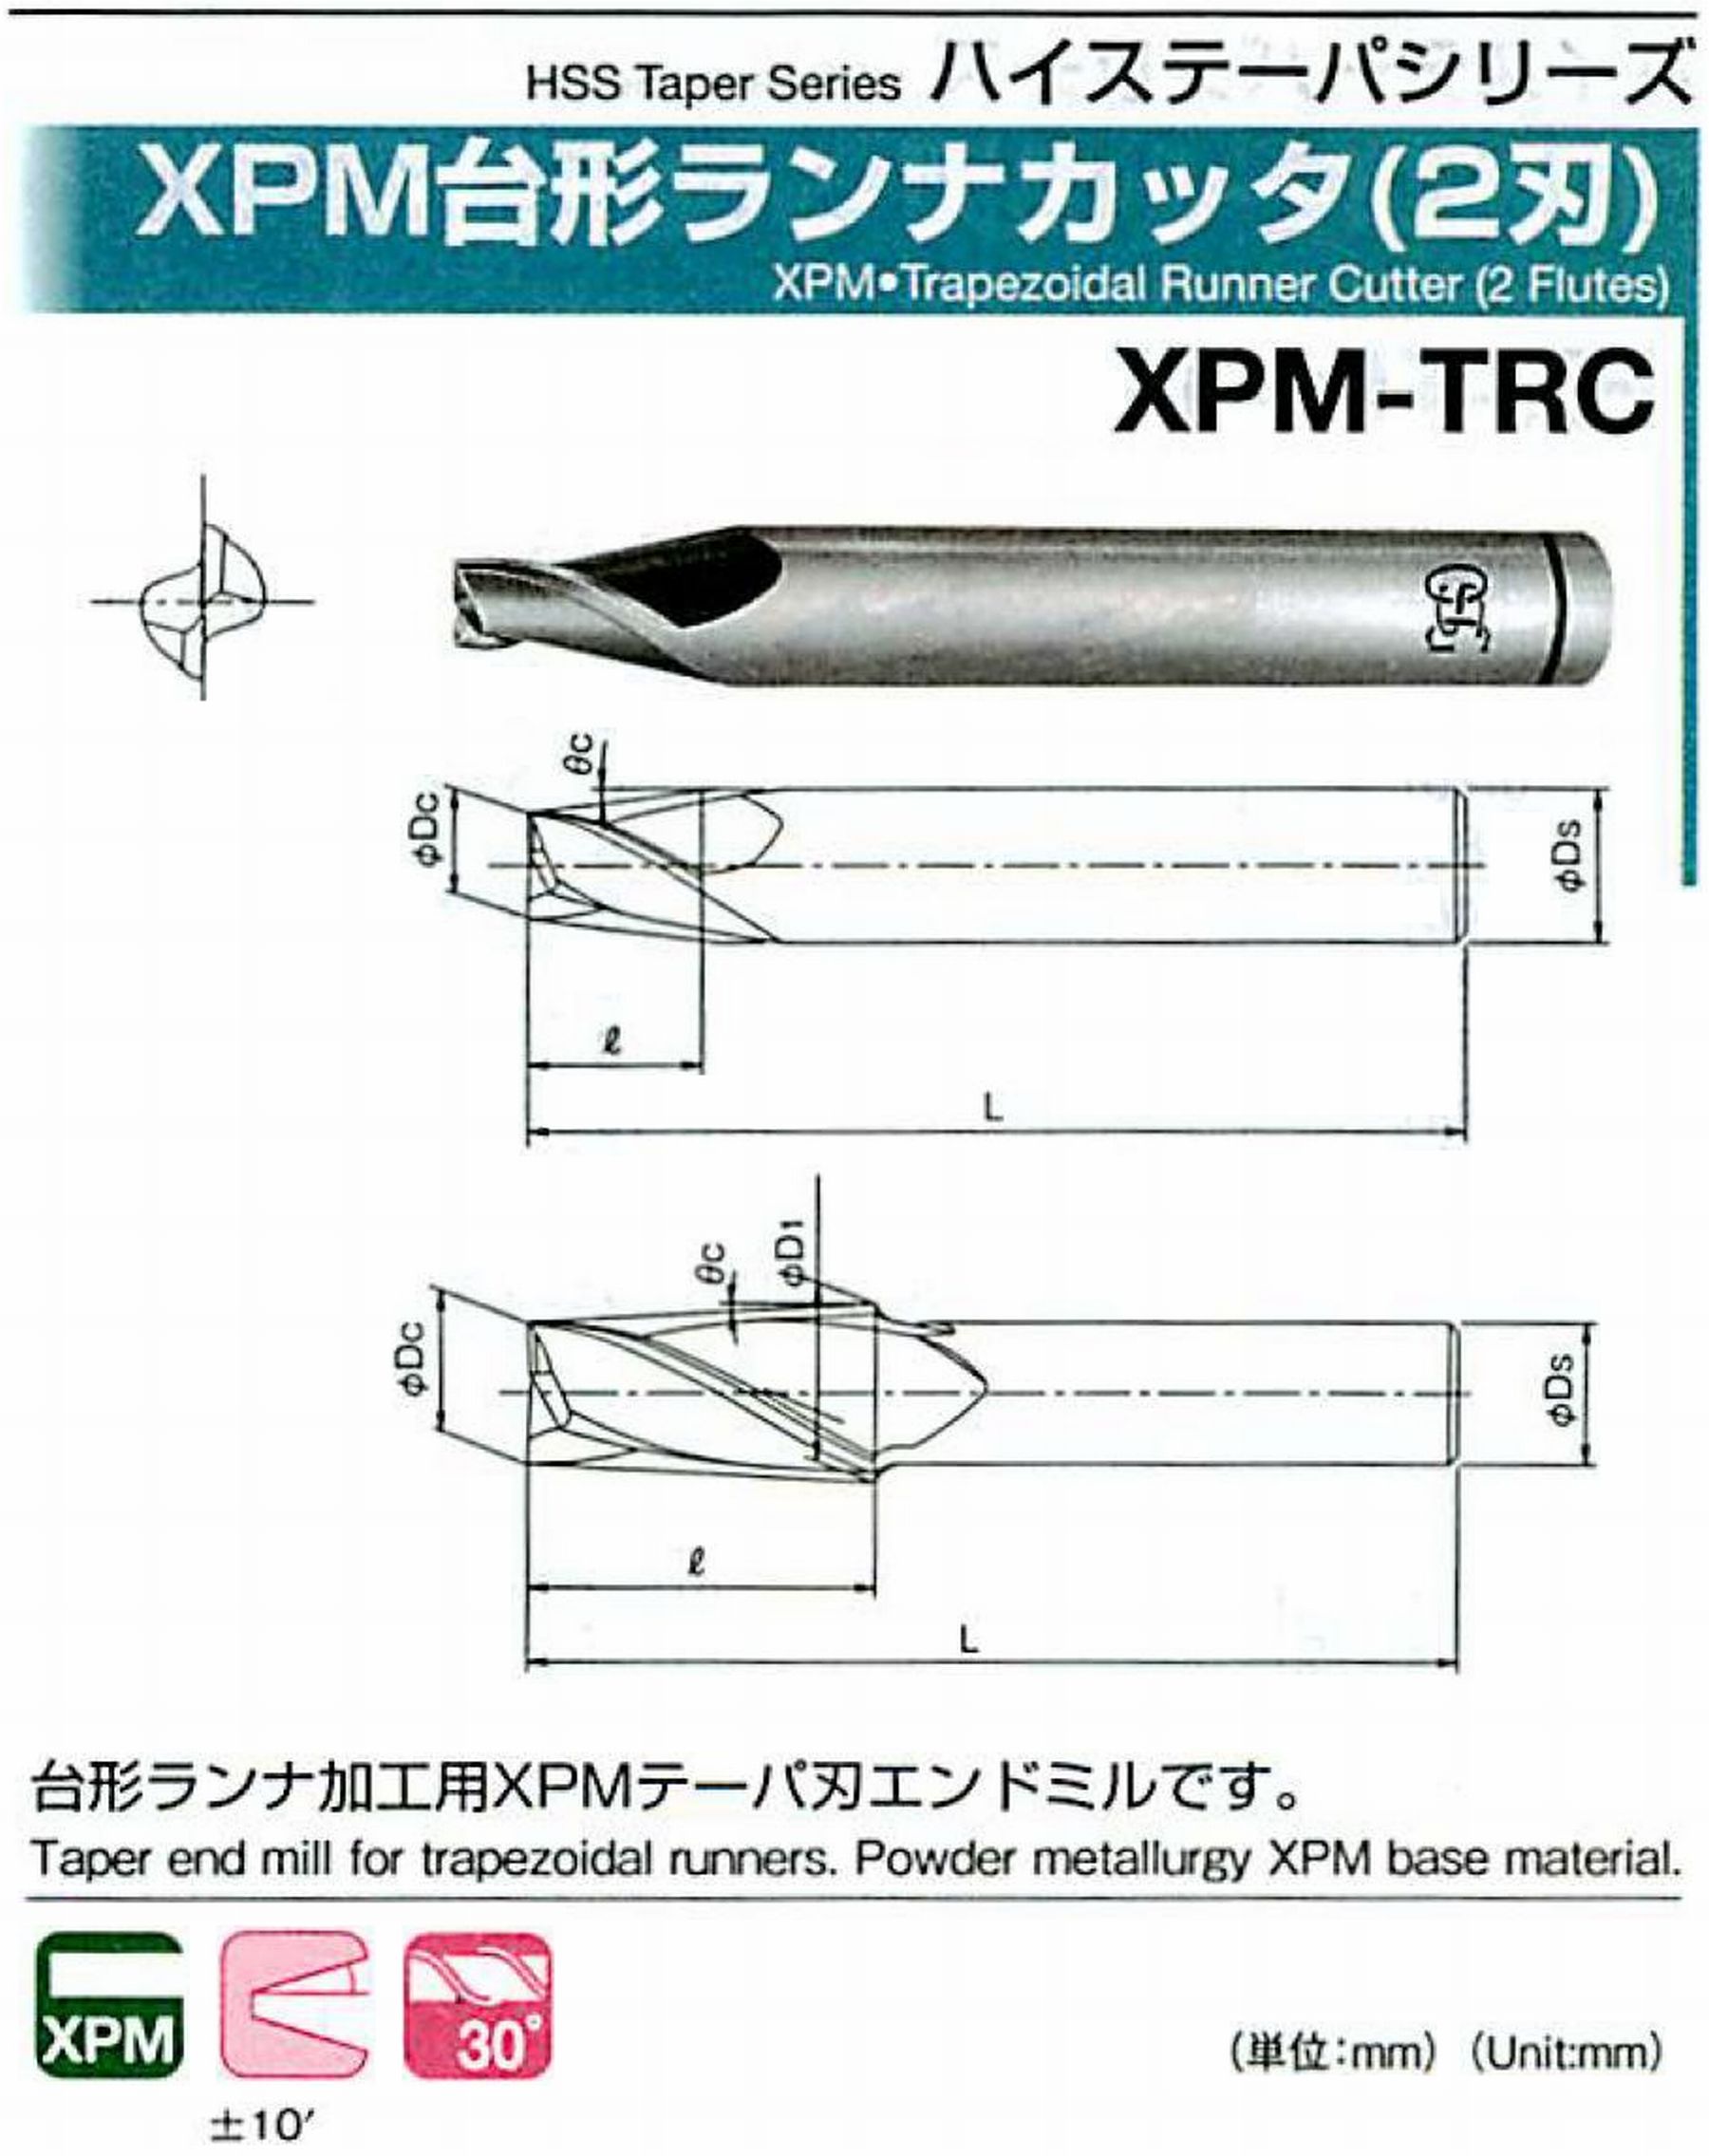 オーエスジー/OSG XPM台形ランナカッタ(2刃) XPM-TRC 外径×刃部テーパ半角3.5×7° 全長50 刃長7 シャンク径6mm